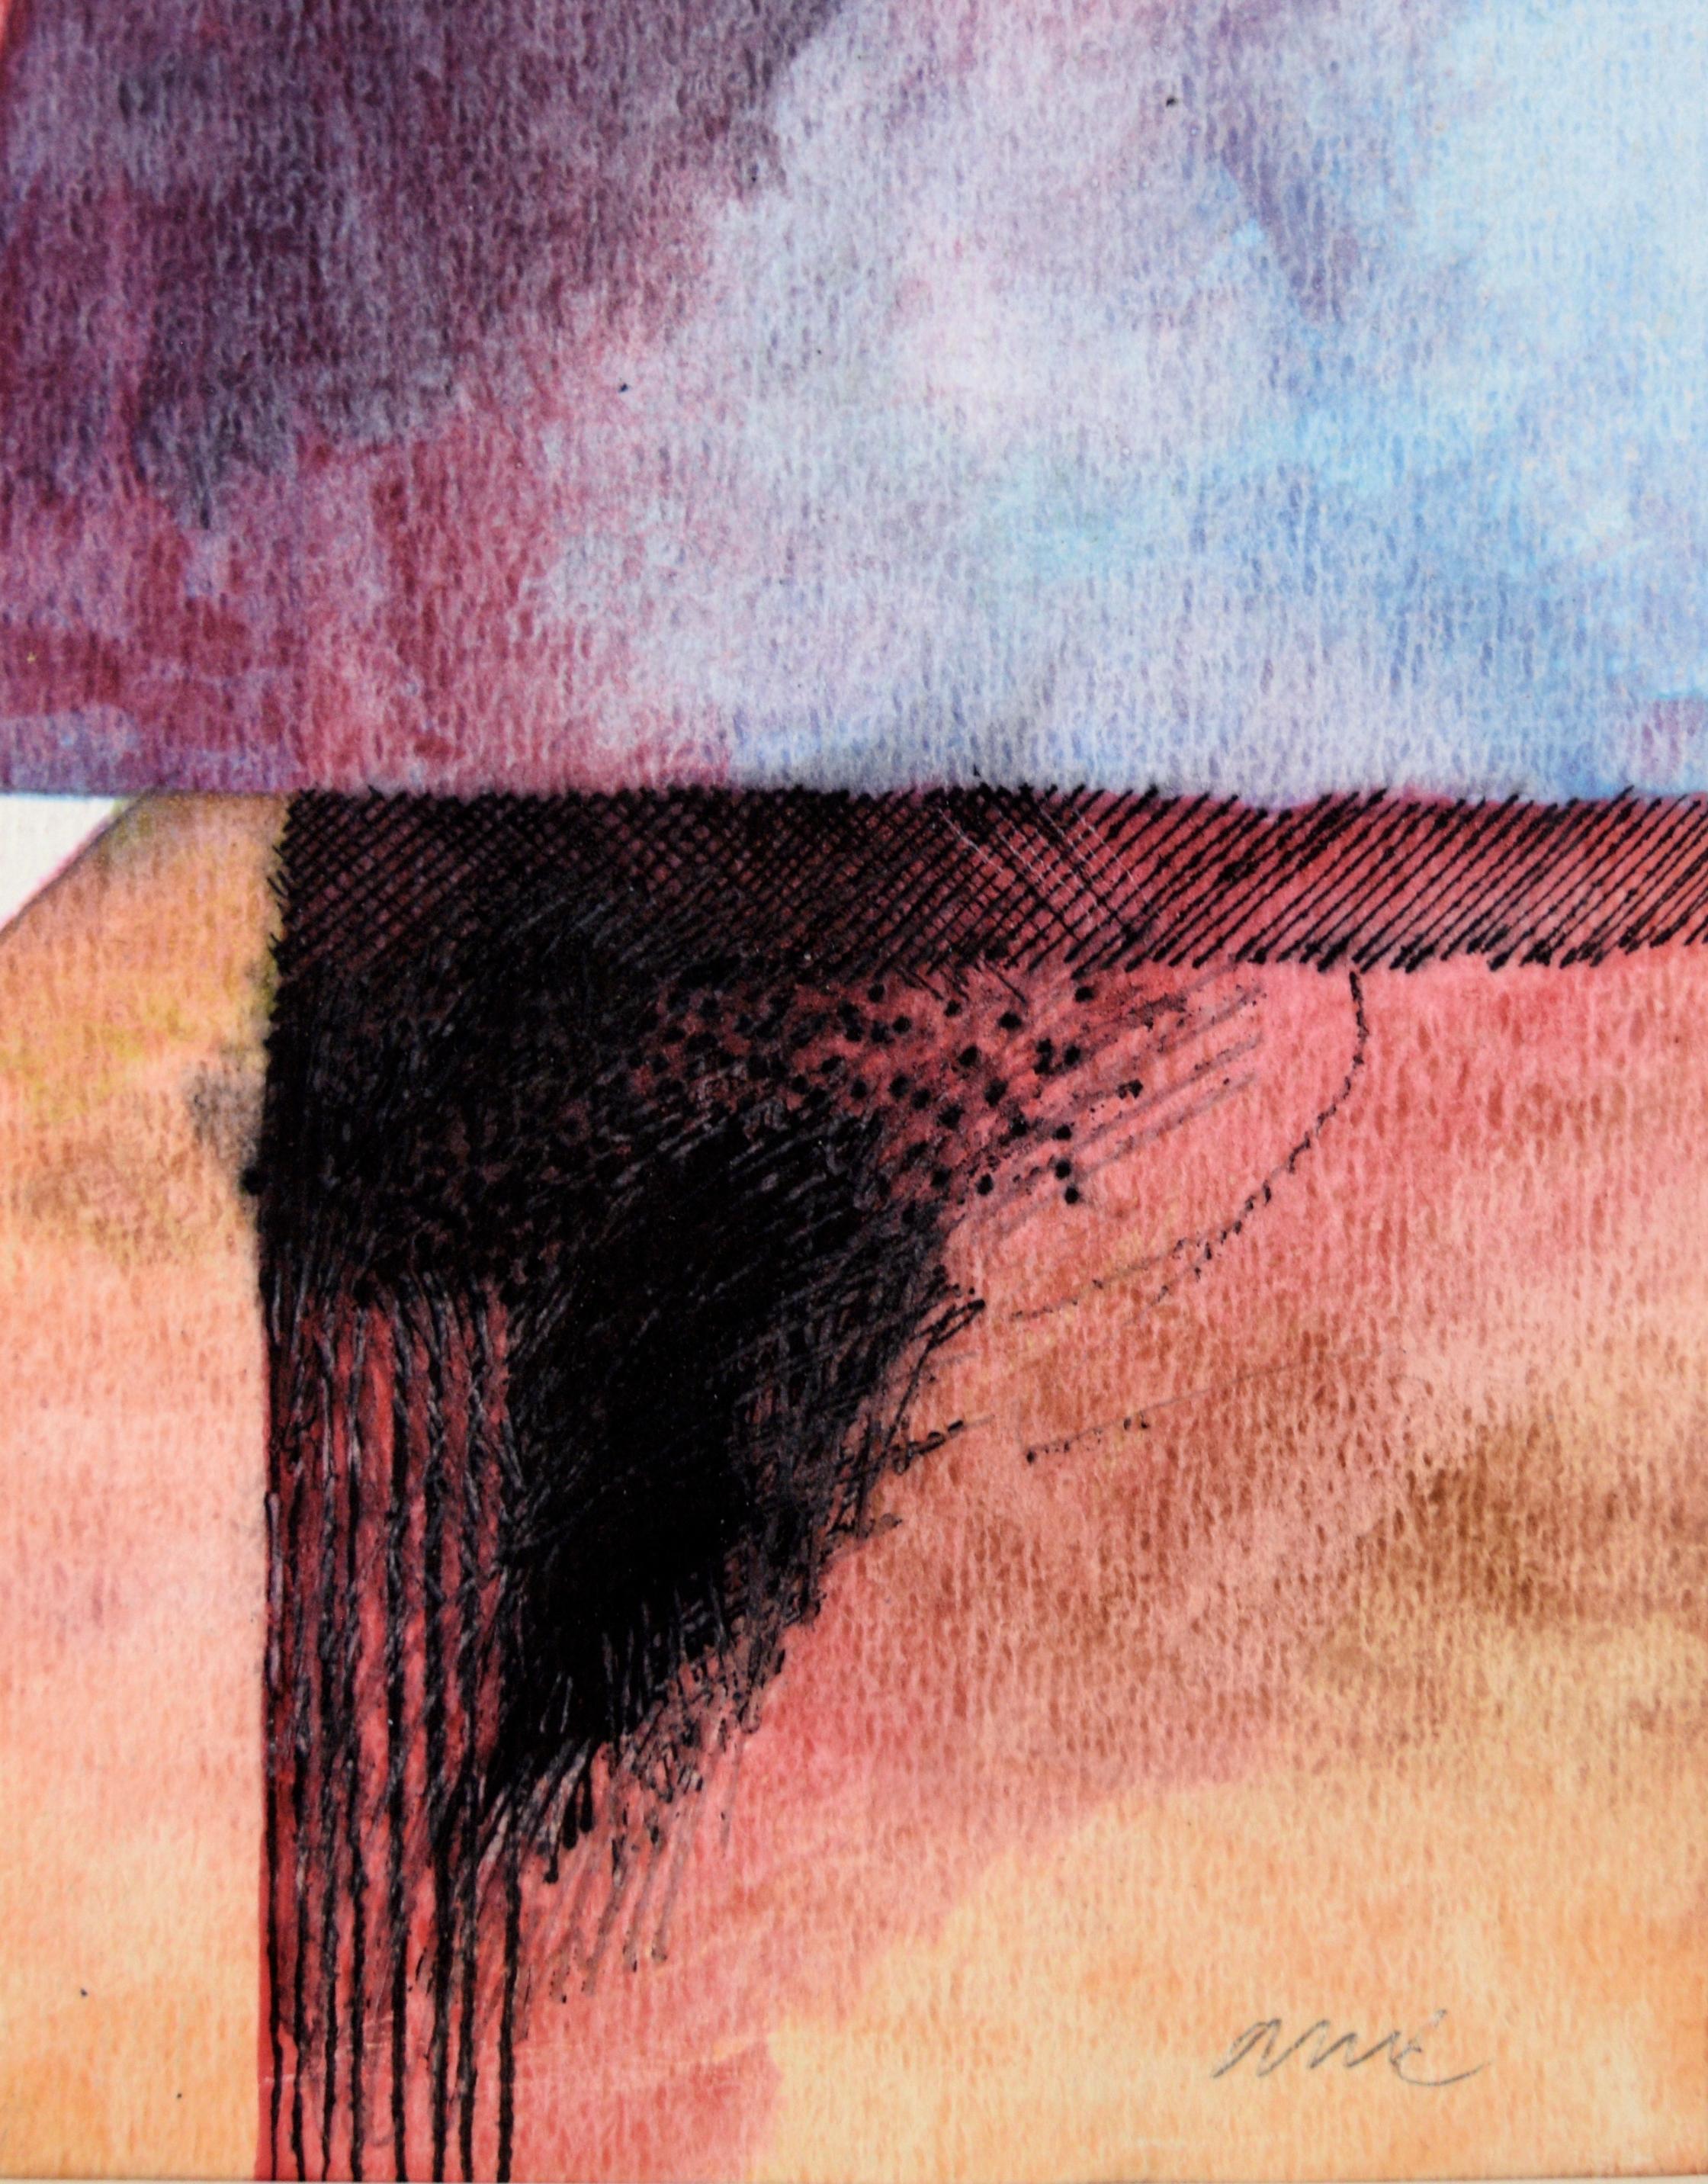 Abstrait aux couleurs vives de Michael William Eggleston (américain, 20e siècle). L'utilisation par Eggleston de différents médiums et techniques se retrouve dans cette œuvre abstraite. Dans le noir en haut à gauche, des lignes sont créées dans une